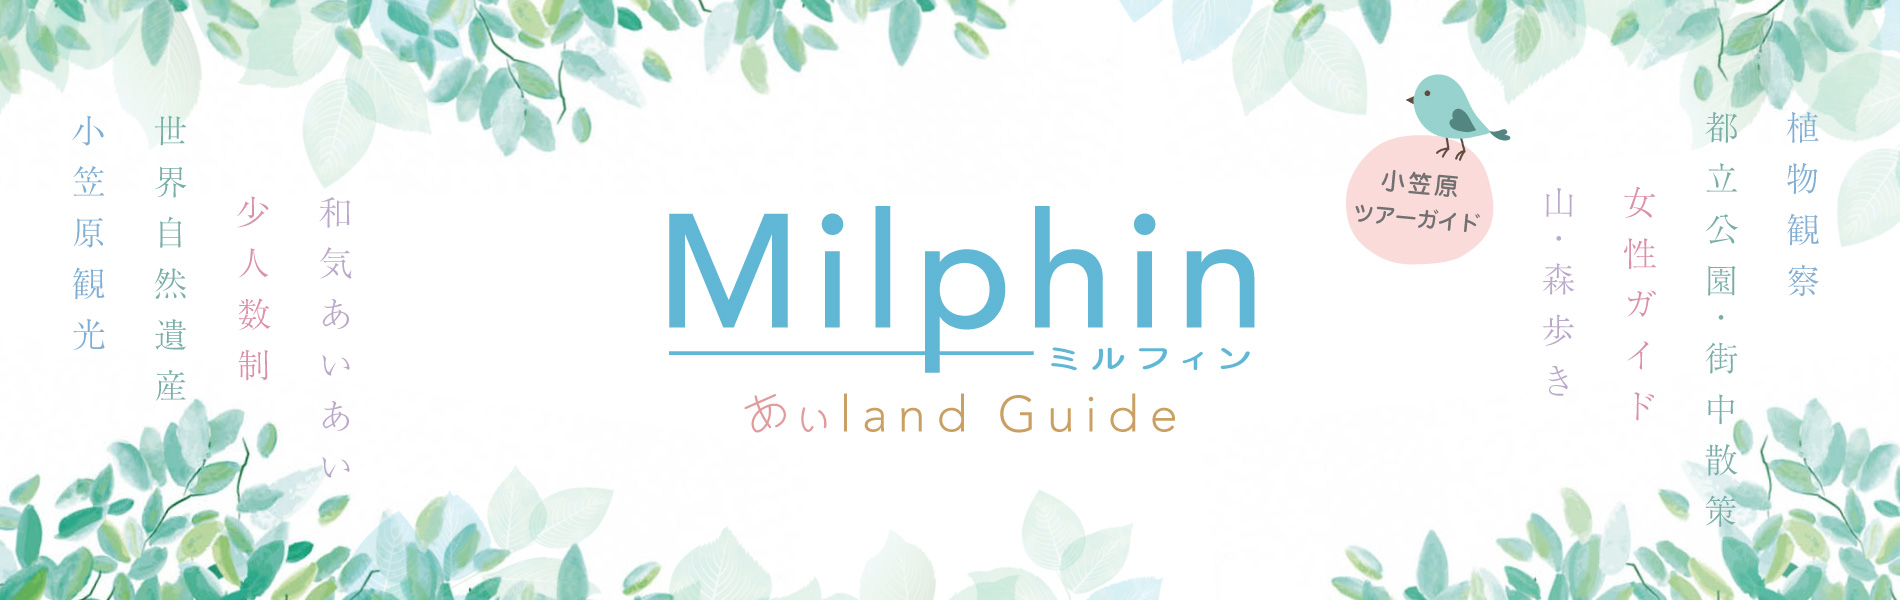 Milphin ミルフィン　あいland Guide